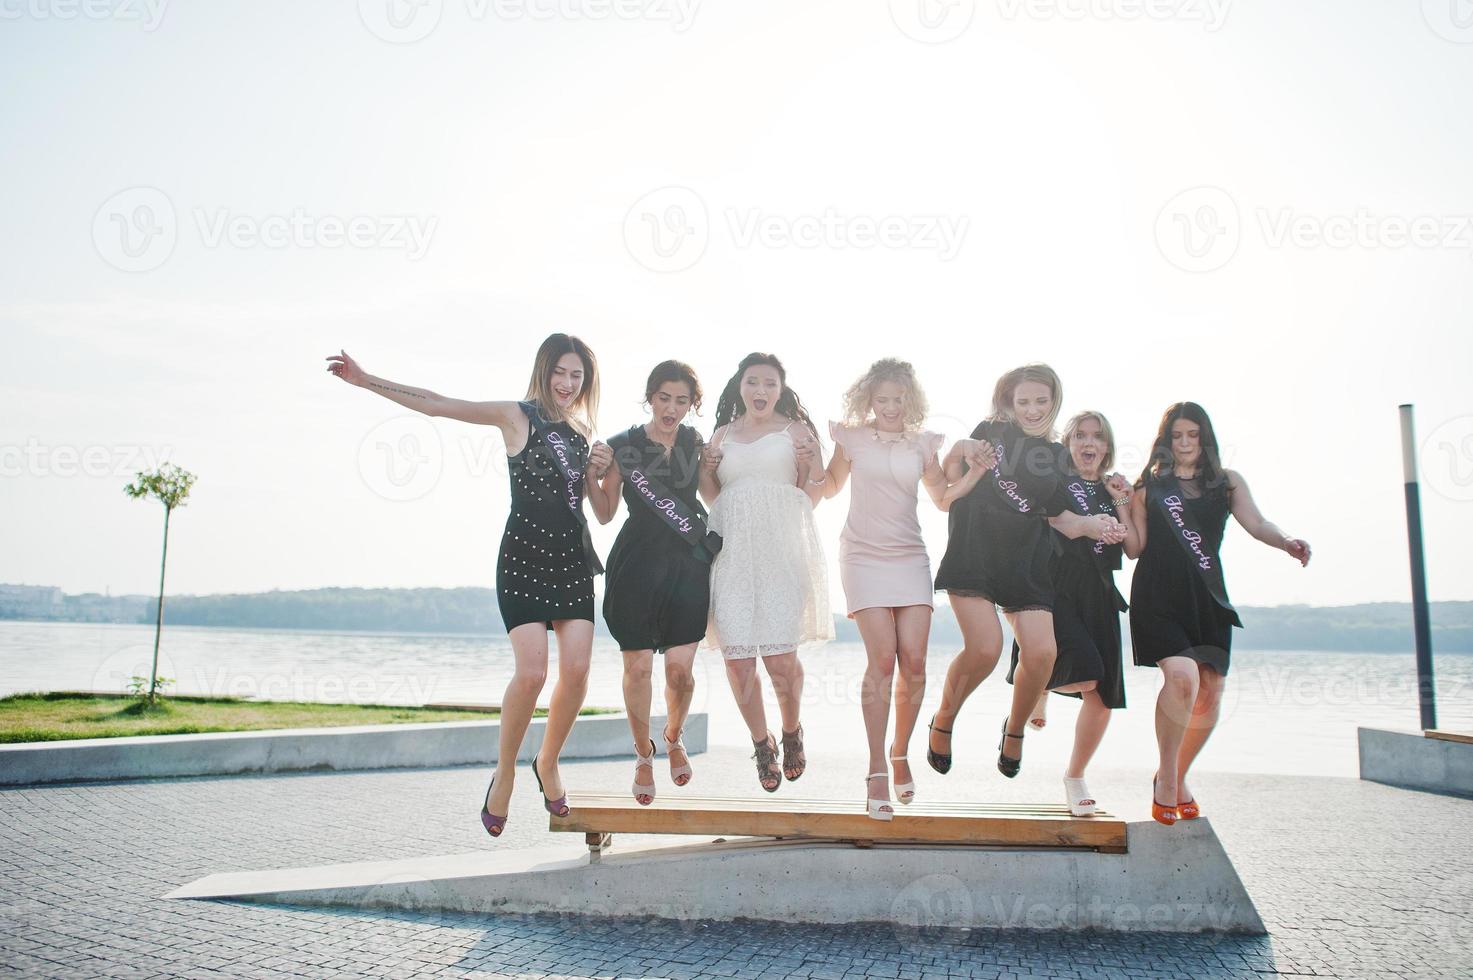 grupo de 7 chicas vestidas de negro y 2 novias saltando en la despedida de soltera. foto